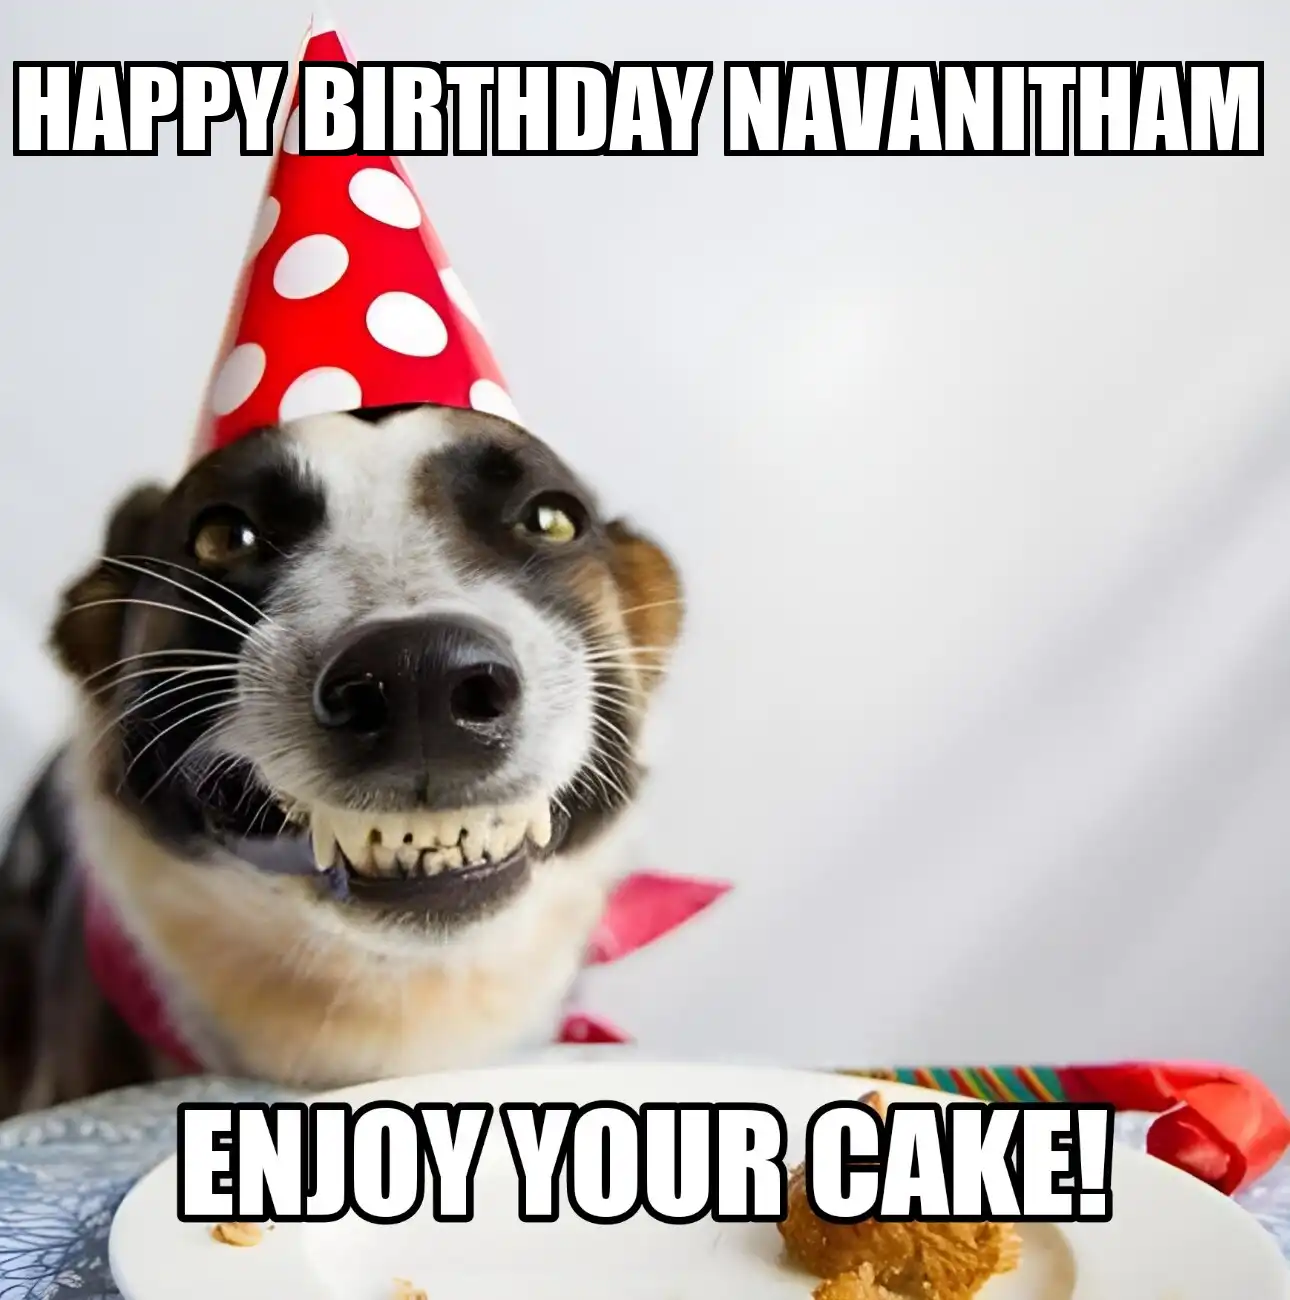 Happy Birthday Navanitham Enjoy Your Cake Dog Meme